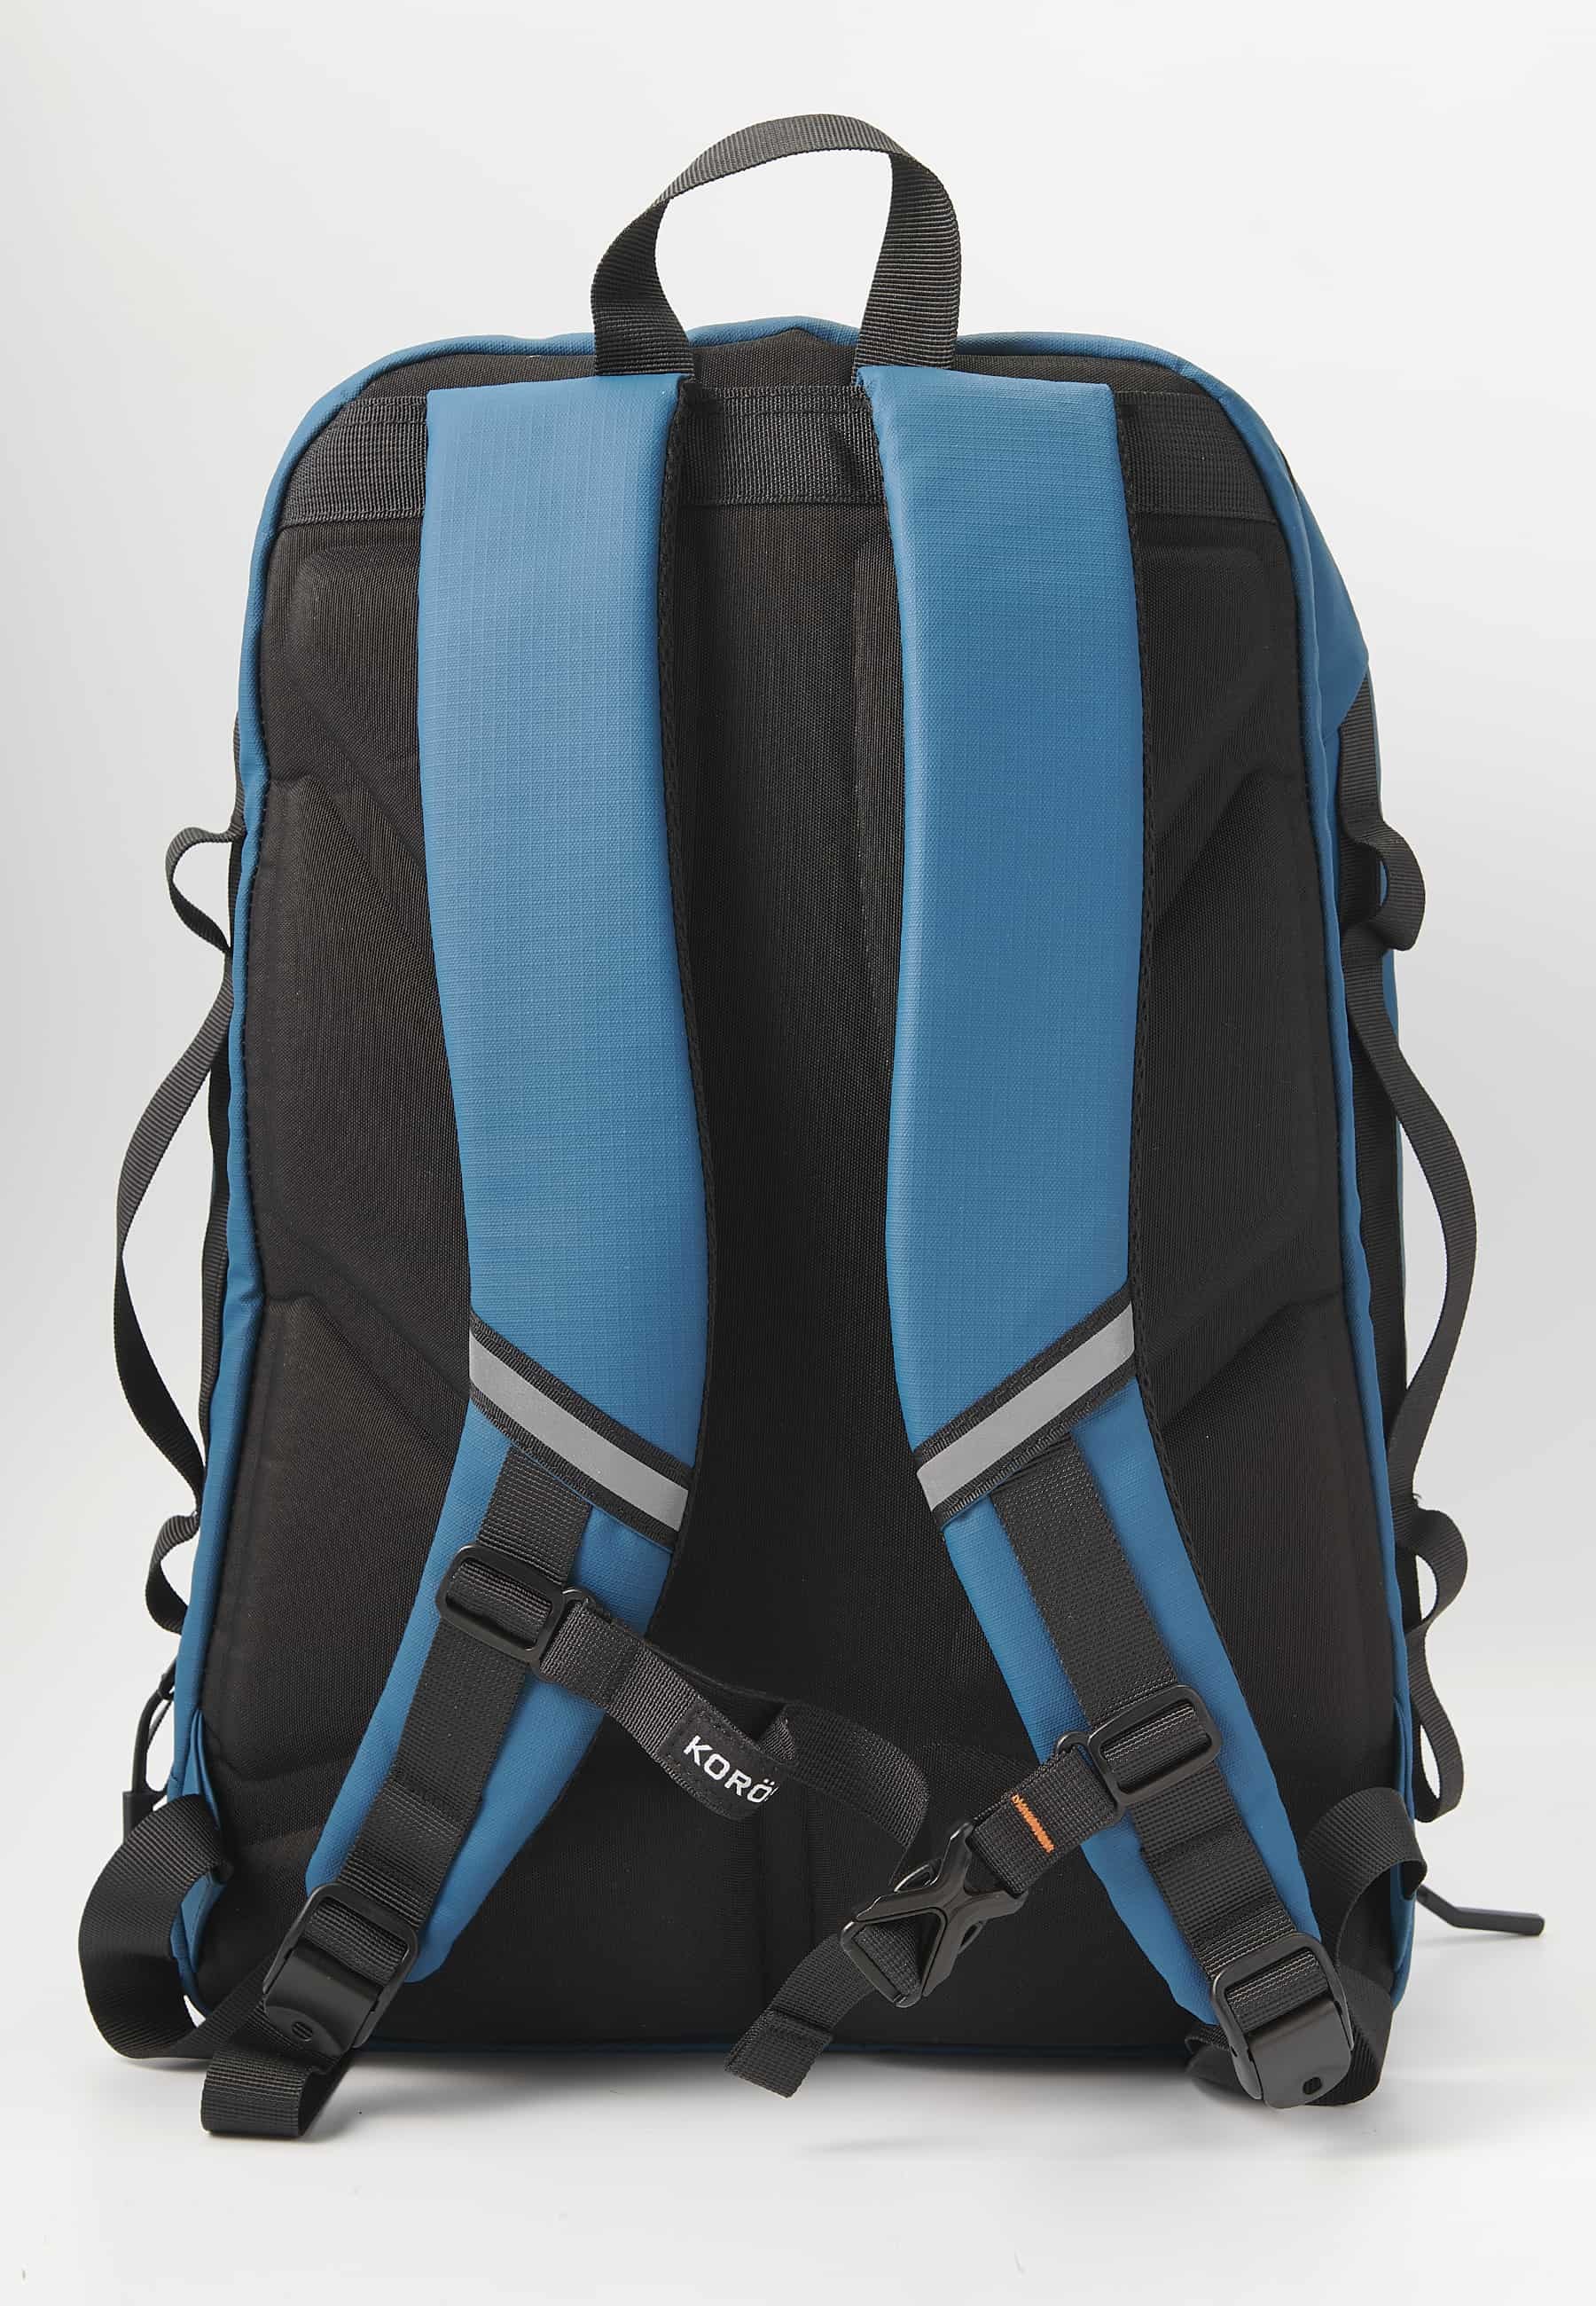 Koröshi-Rucksack mit zwei Reißverschlussfächern, eines für einen Laptop, und verstellbaren Trägern in Blau